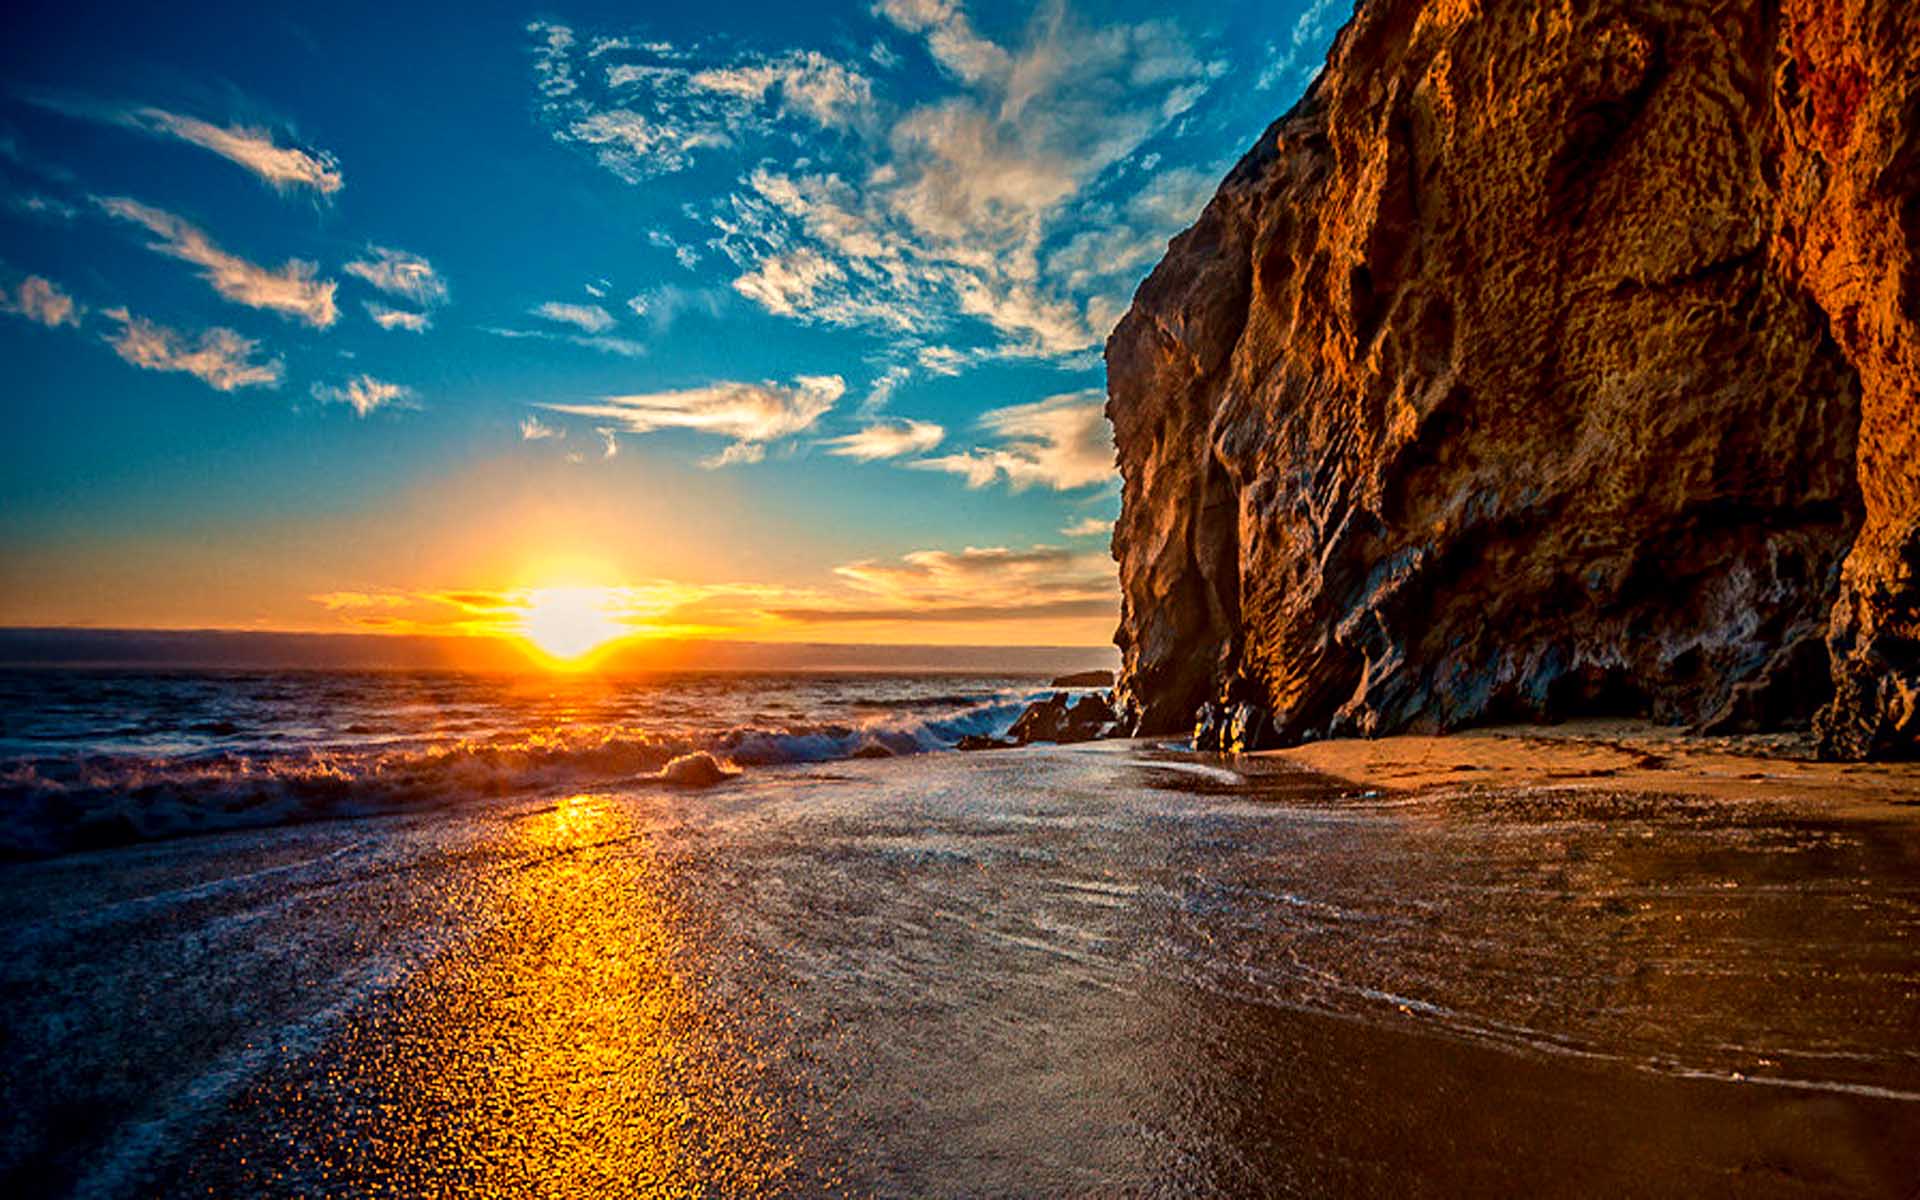 Скачать картинку Солнце, Пляж, Океан, Земля/природа, Утёс в телефон бесплатно.